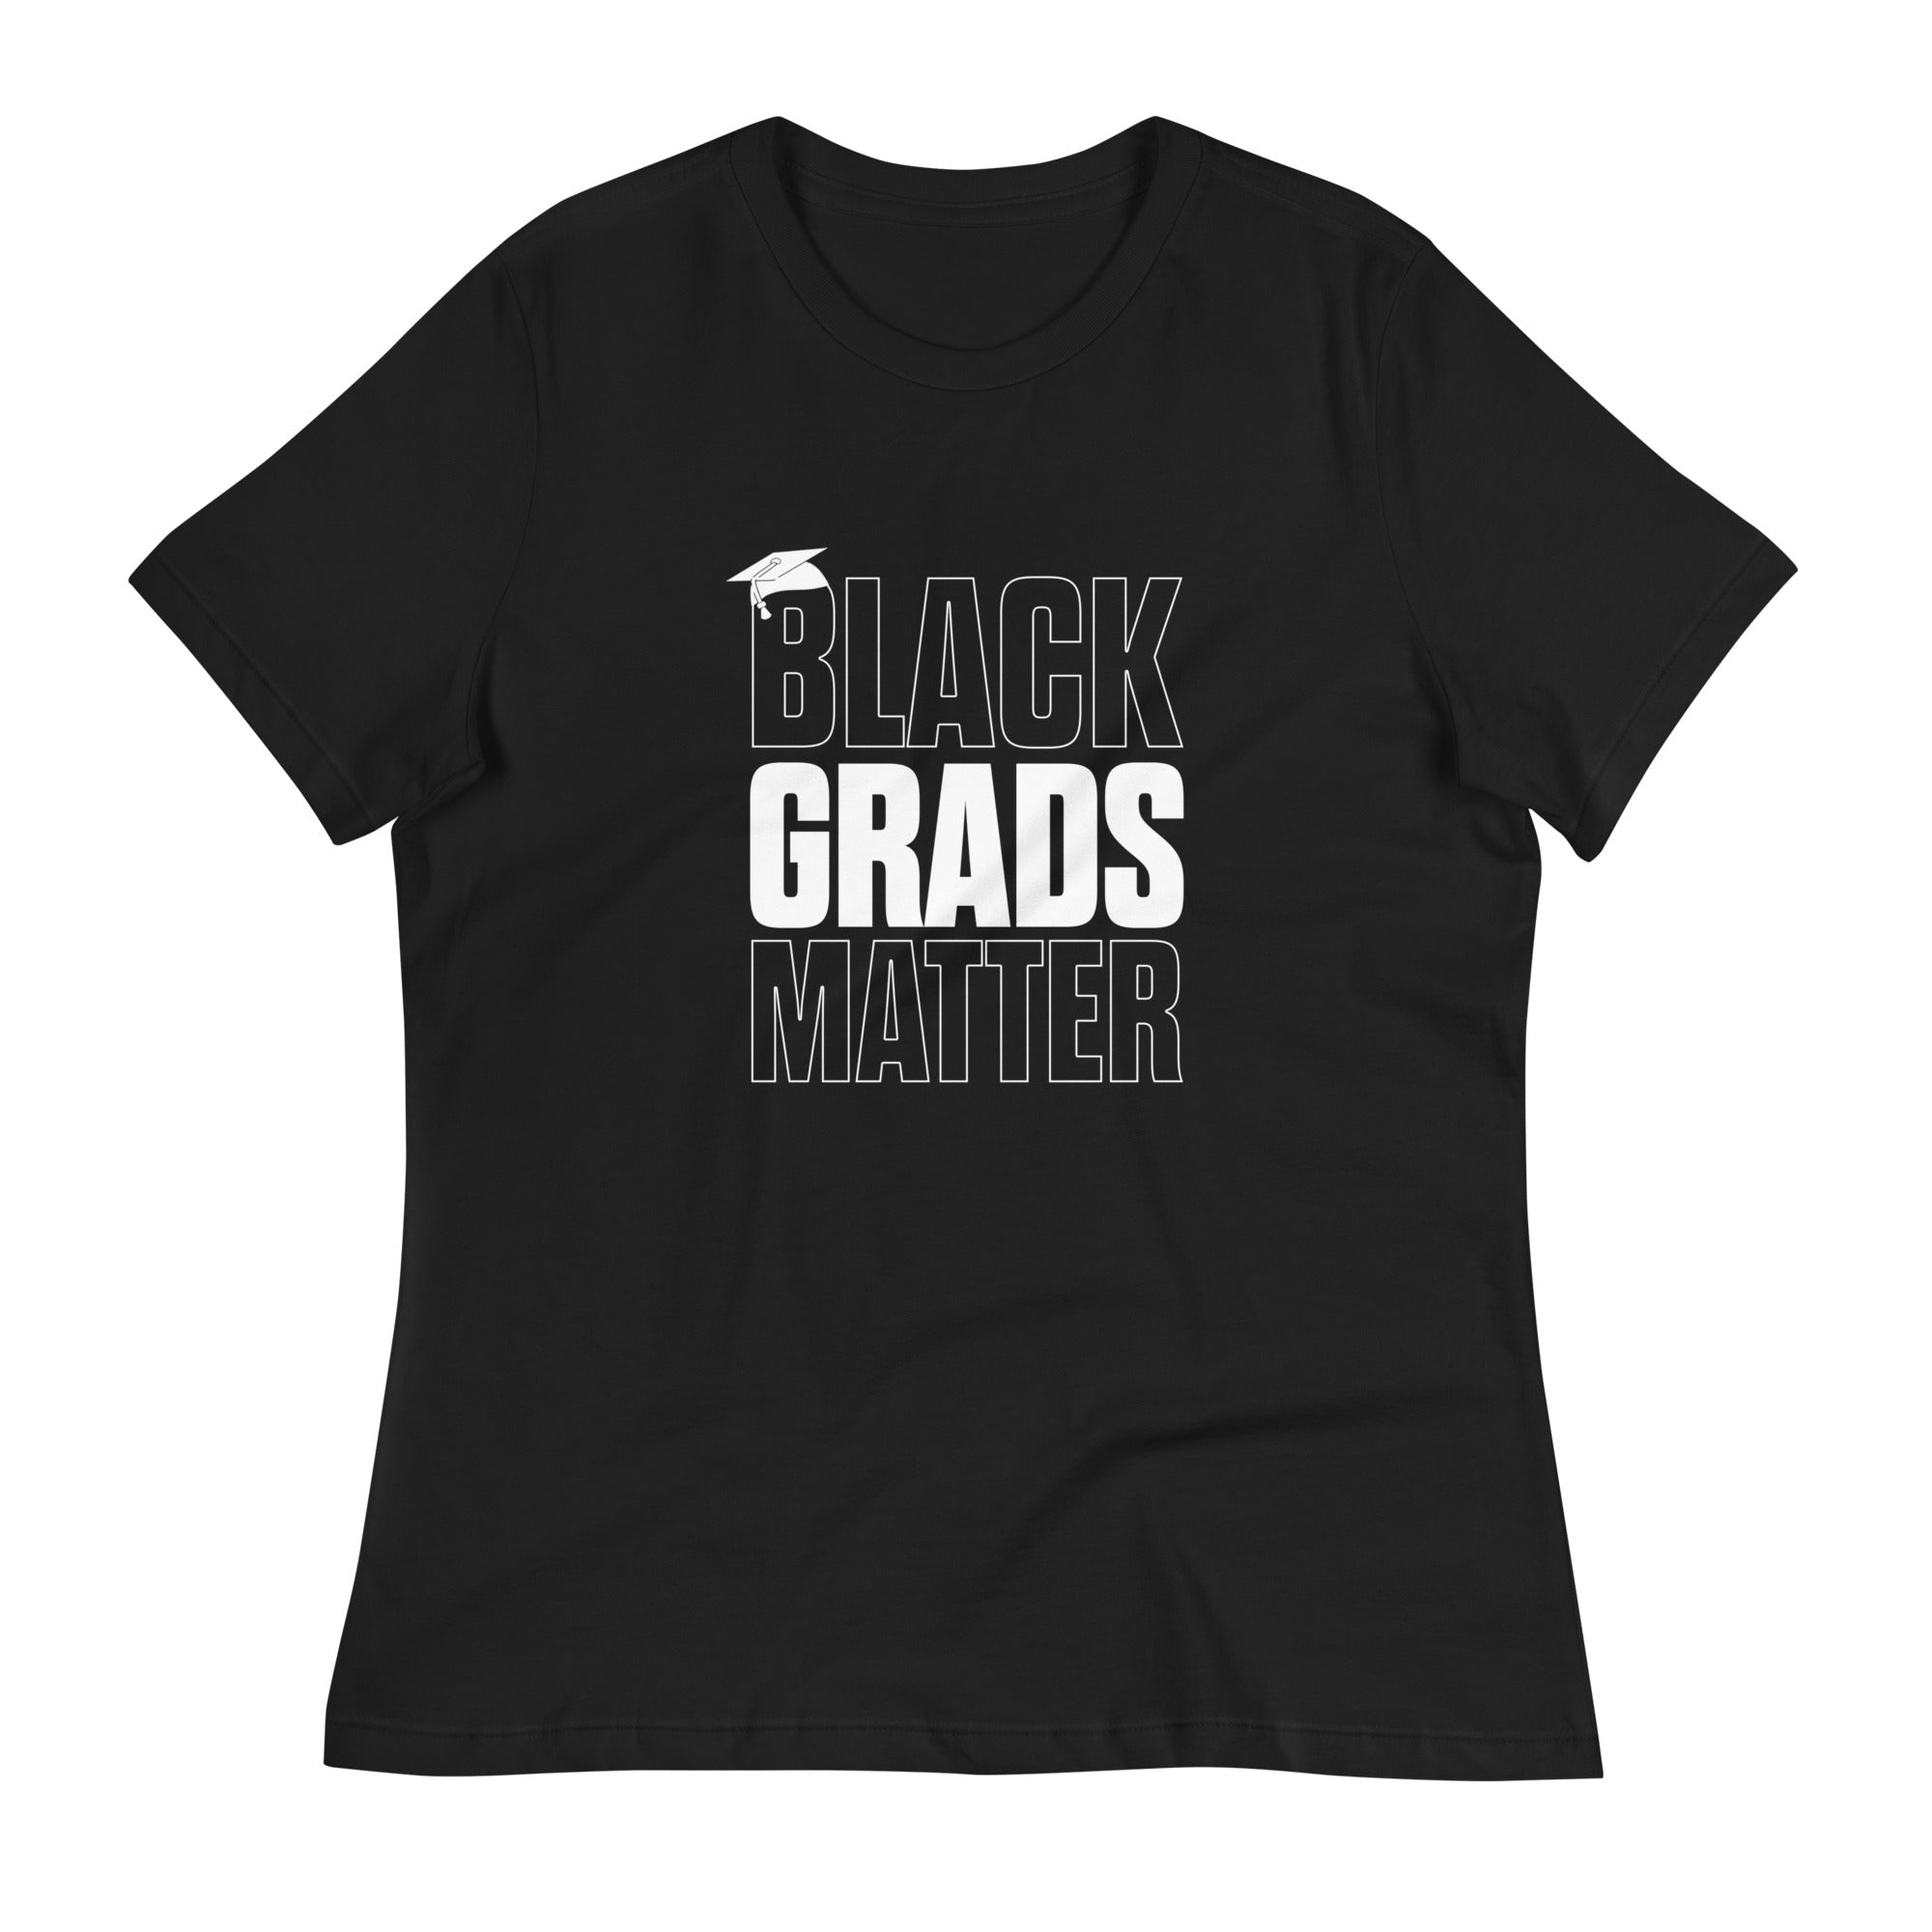 Women's Black Grads Matter T-Shirt - HBCU Buzz Shop